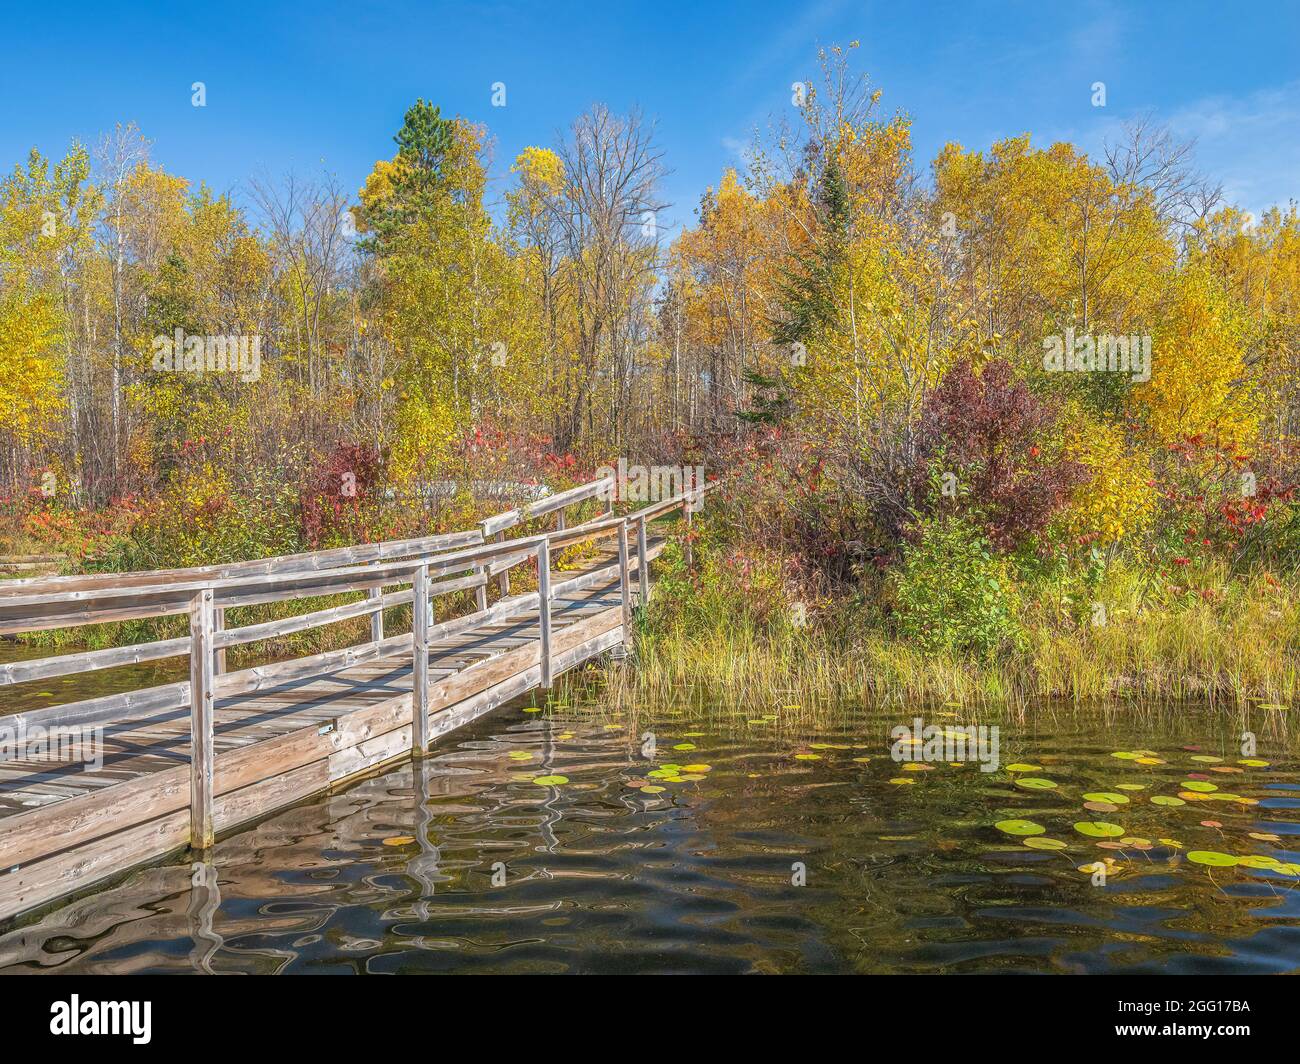 Fußbrücke über das Wasser führt zu einem Laubwald mit bunten Blättern Stockfoto